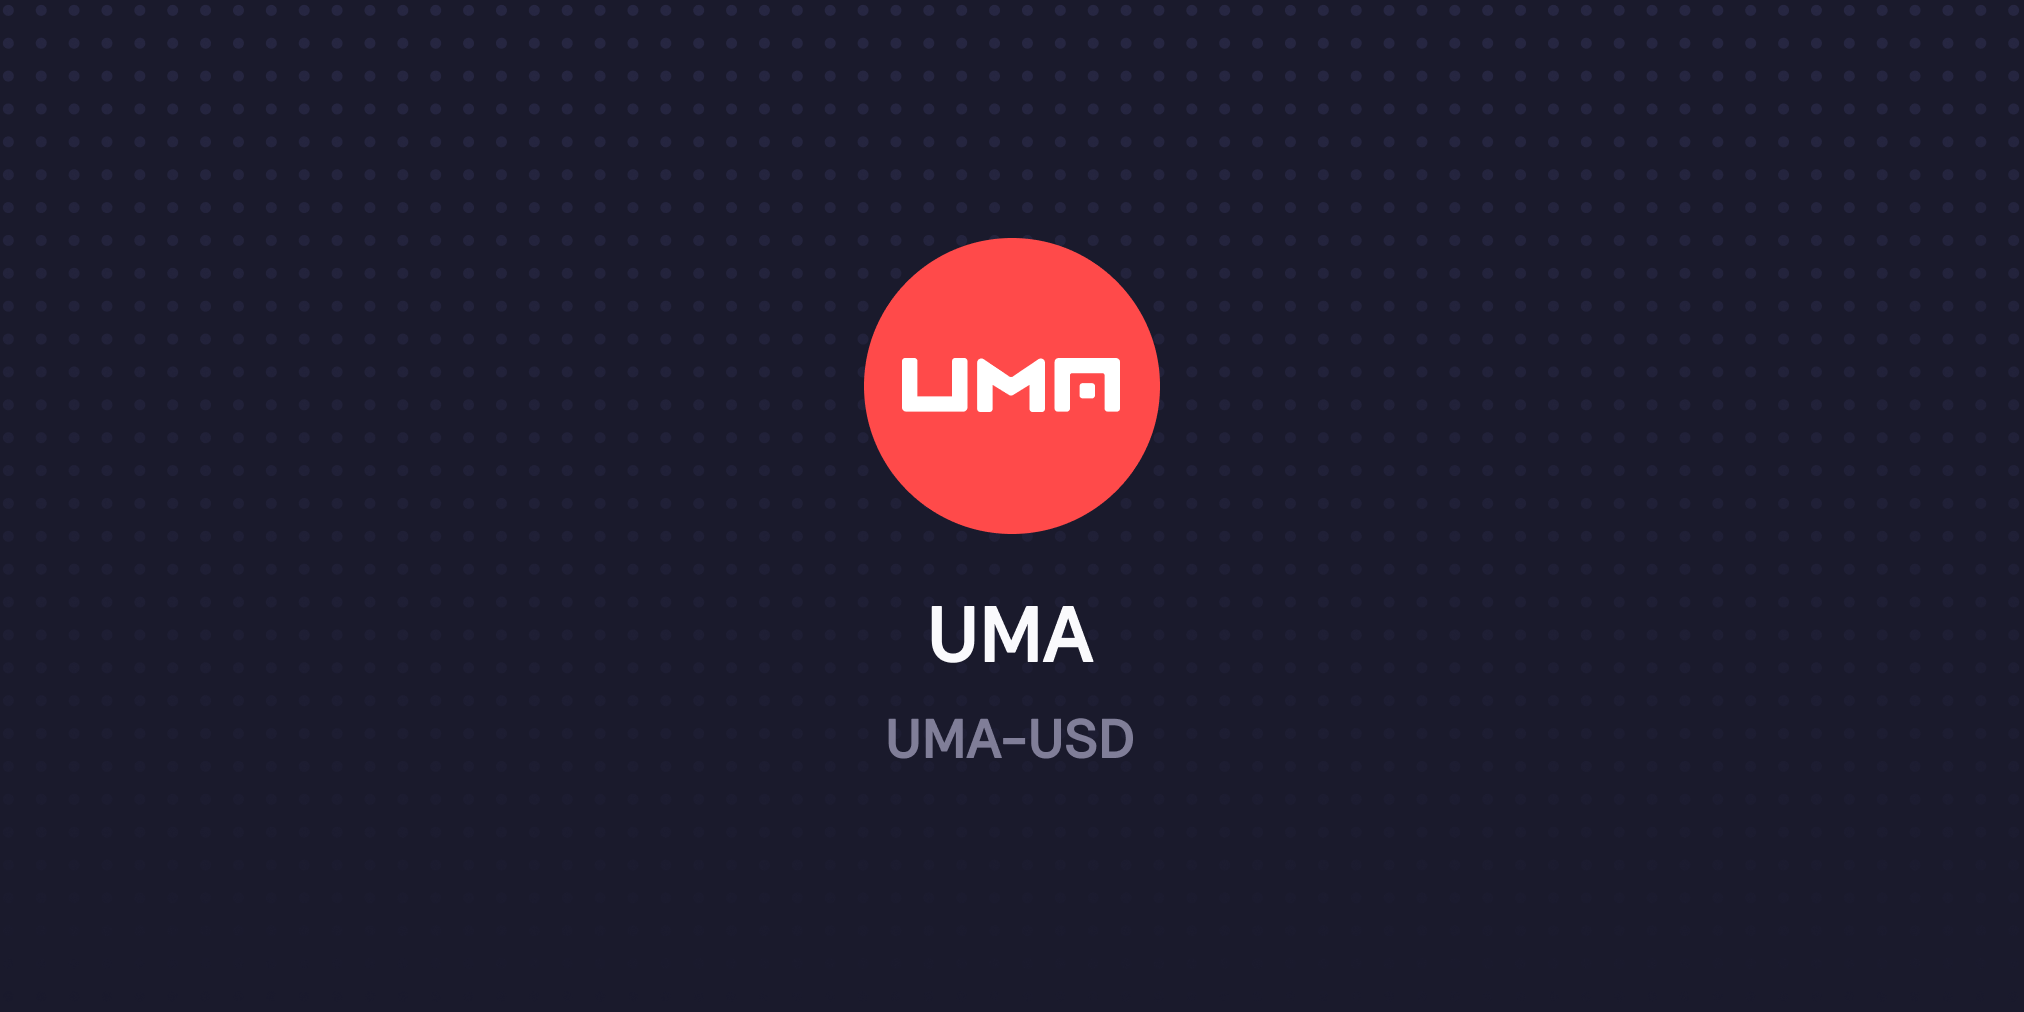 UMA now live